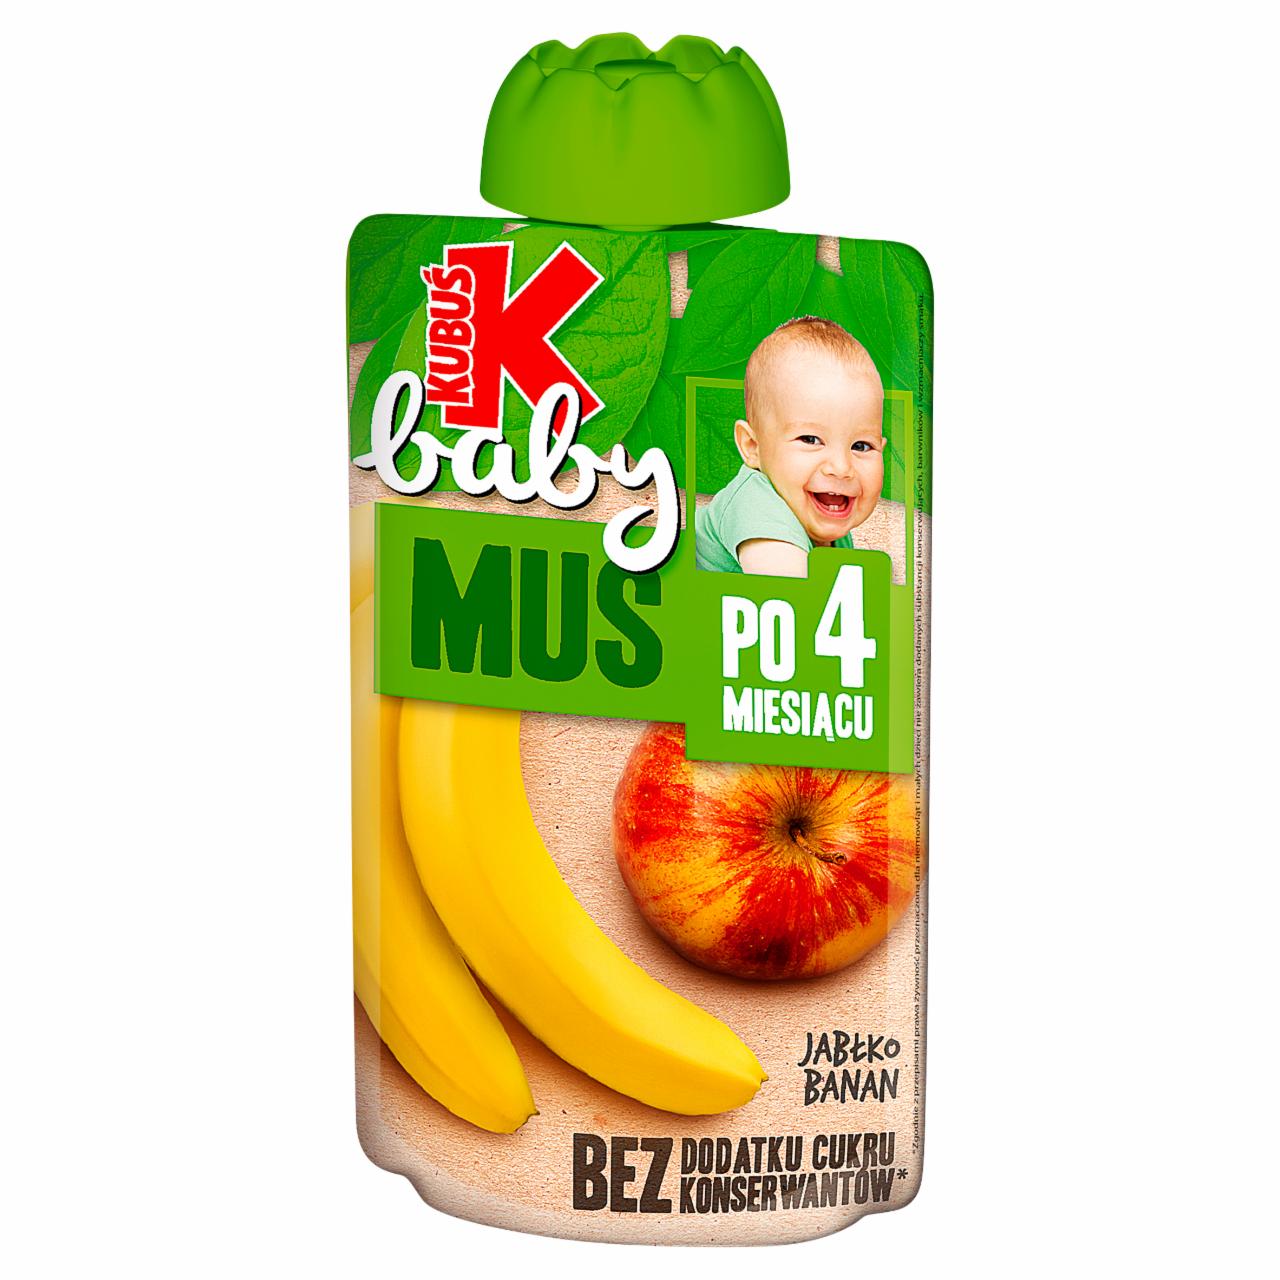 Zdjęcia - Baby Mus po 4 miesiącu jabłko banan Kubuś